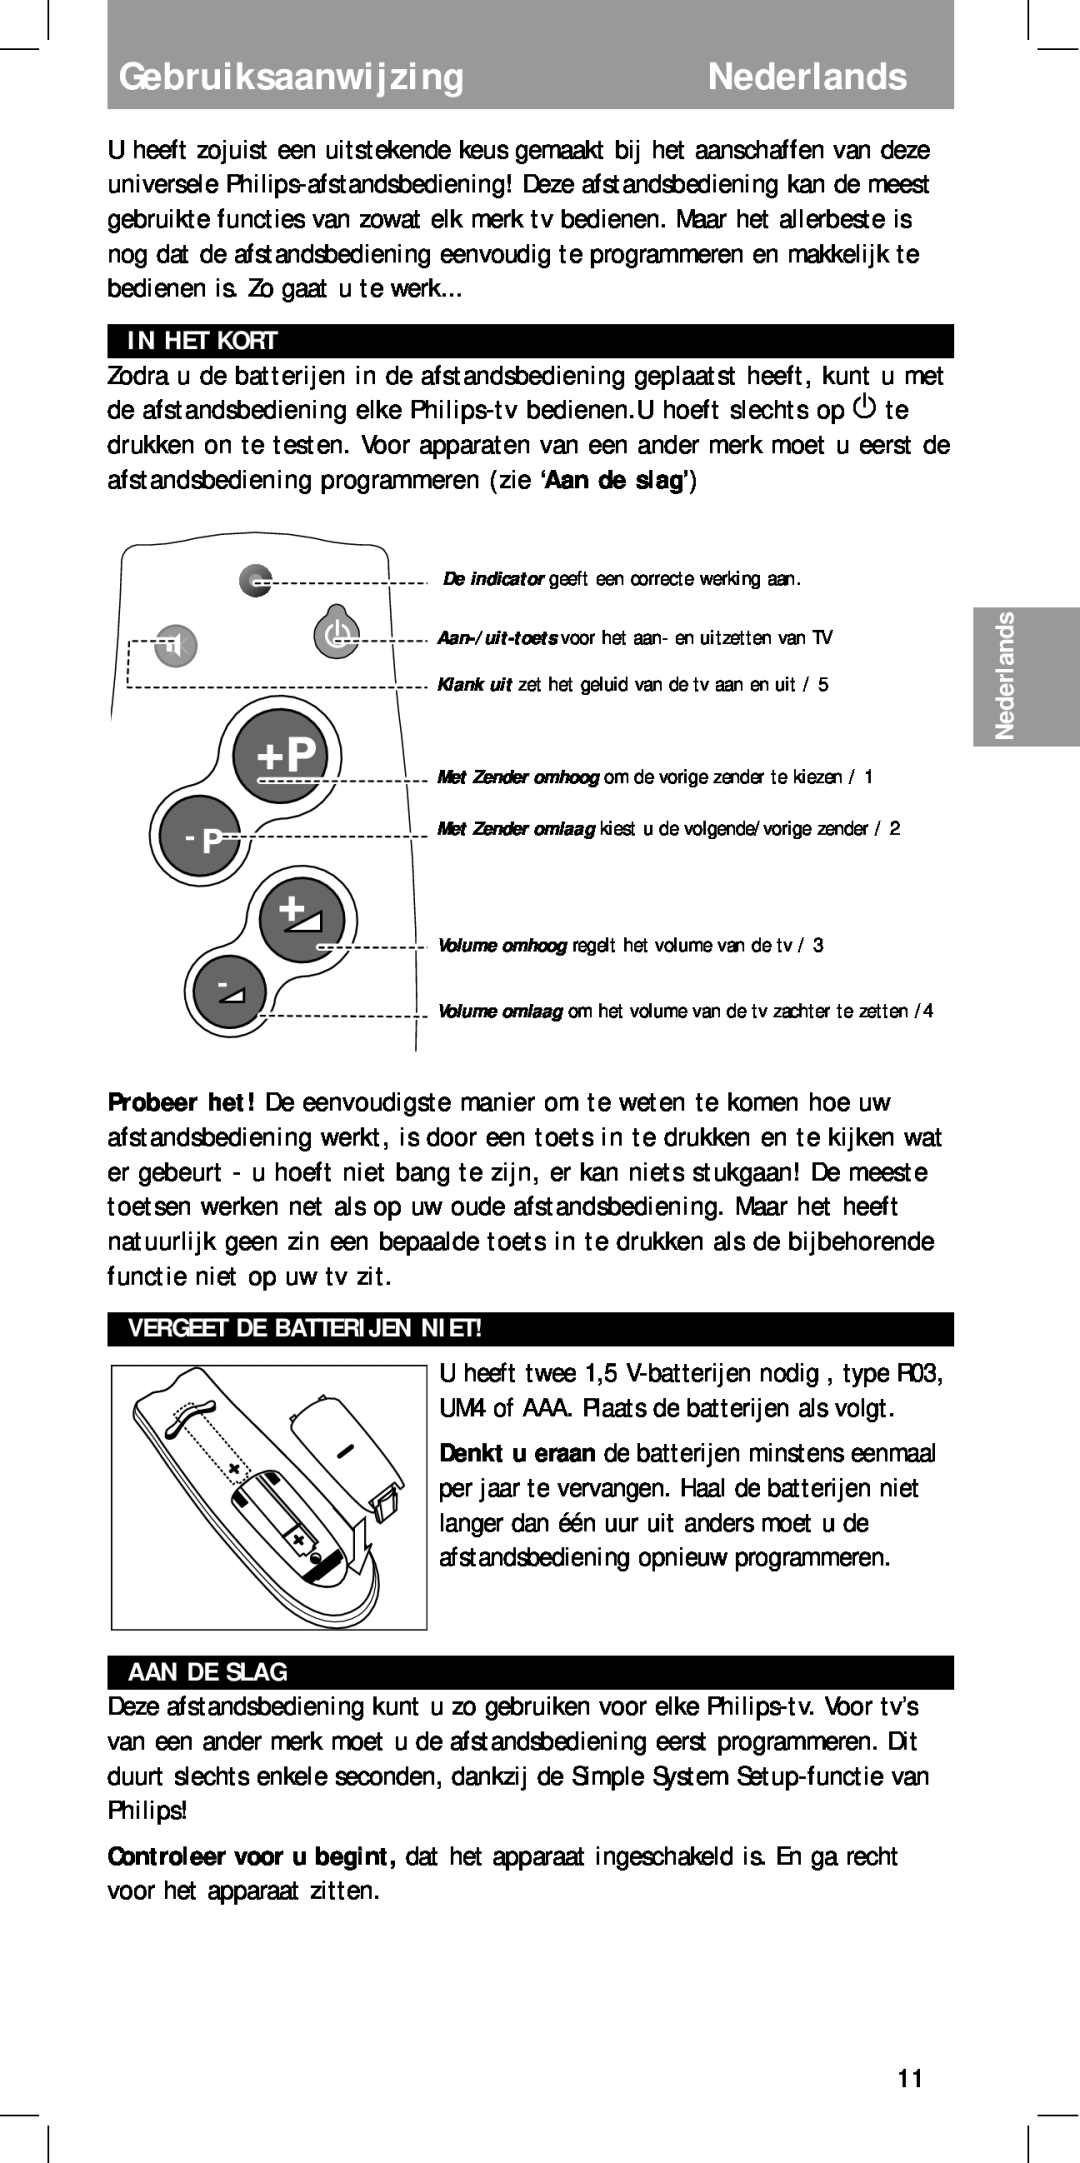 Philips MC-110 manual GebruiksaanwijzingNederlands, In Het Kort, Vergeet De Batterijen Niet, Aan De Slag 